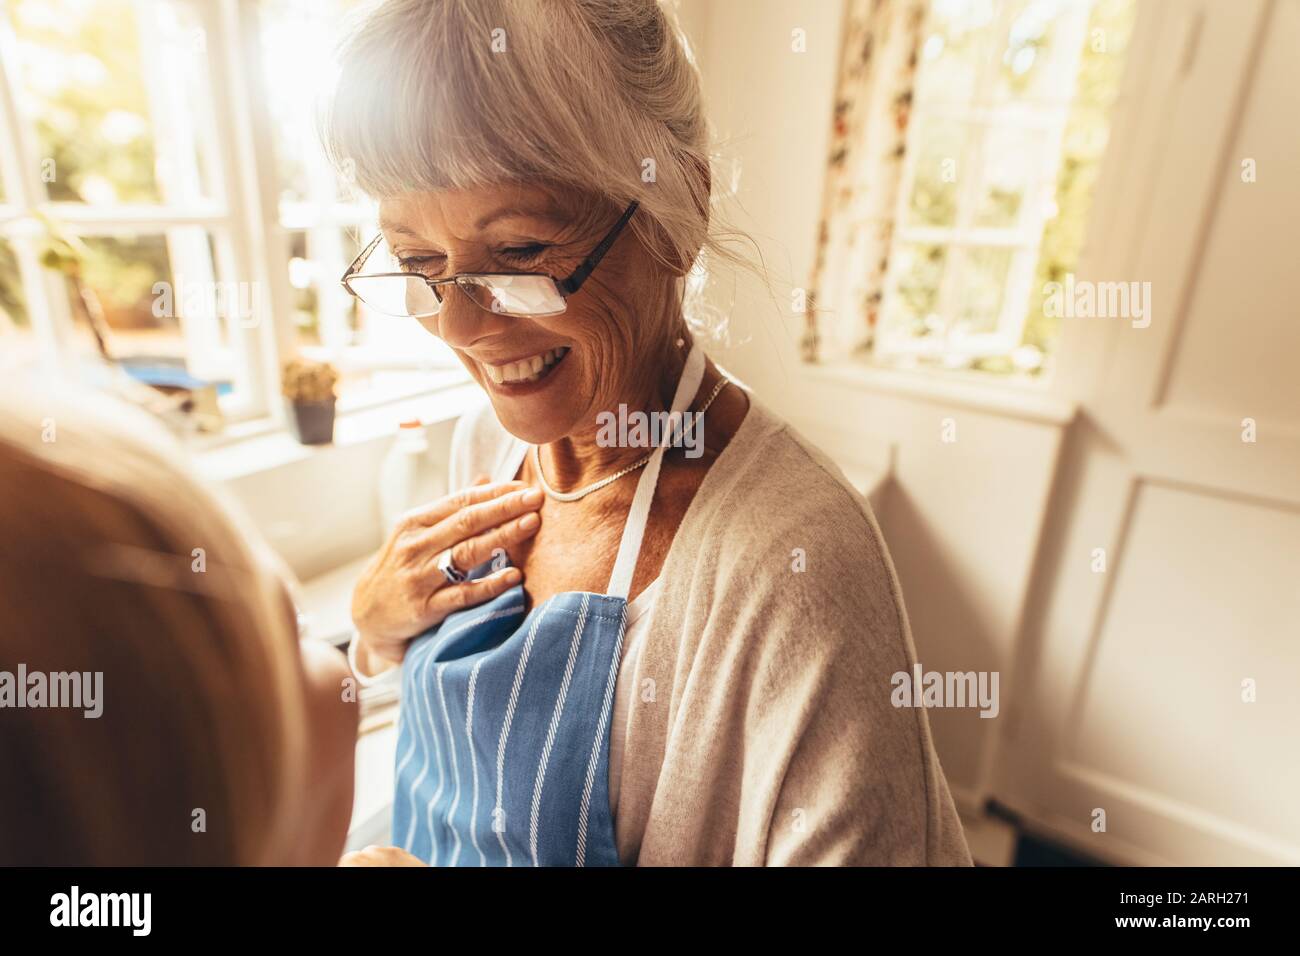 Lächelnde Seniorin, die in ihrem Haus in einer Schürze steht. Fröhliche alte Frau, die in der Küche steht und lächelt. Stockfoto